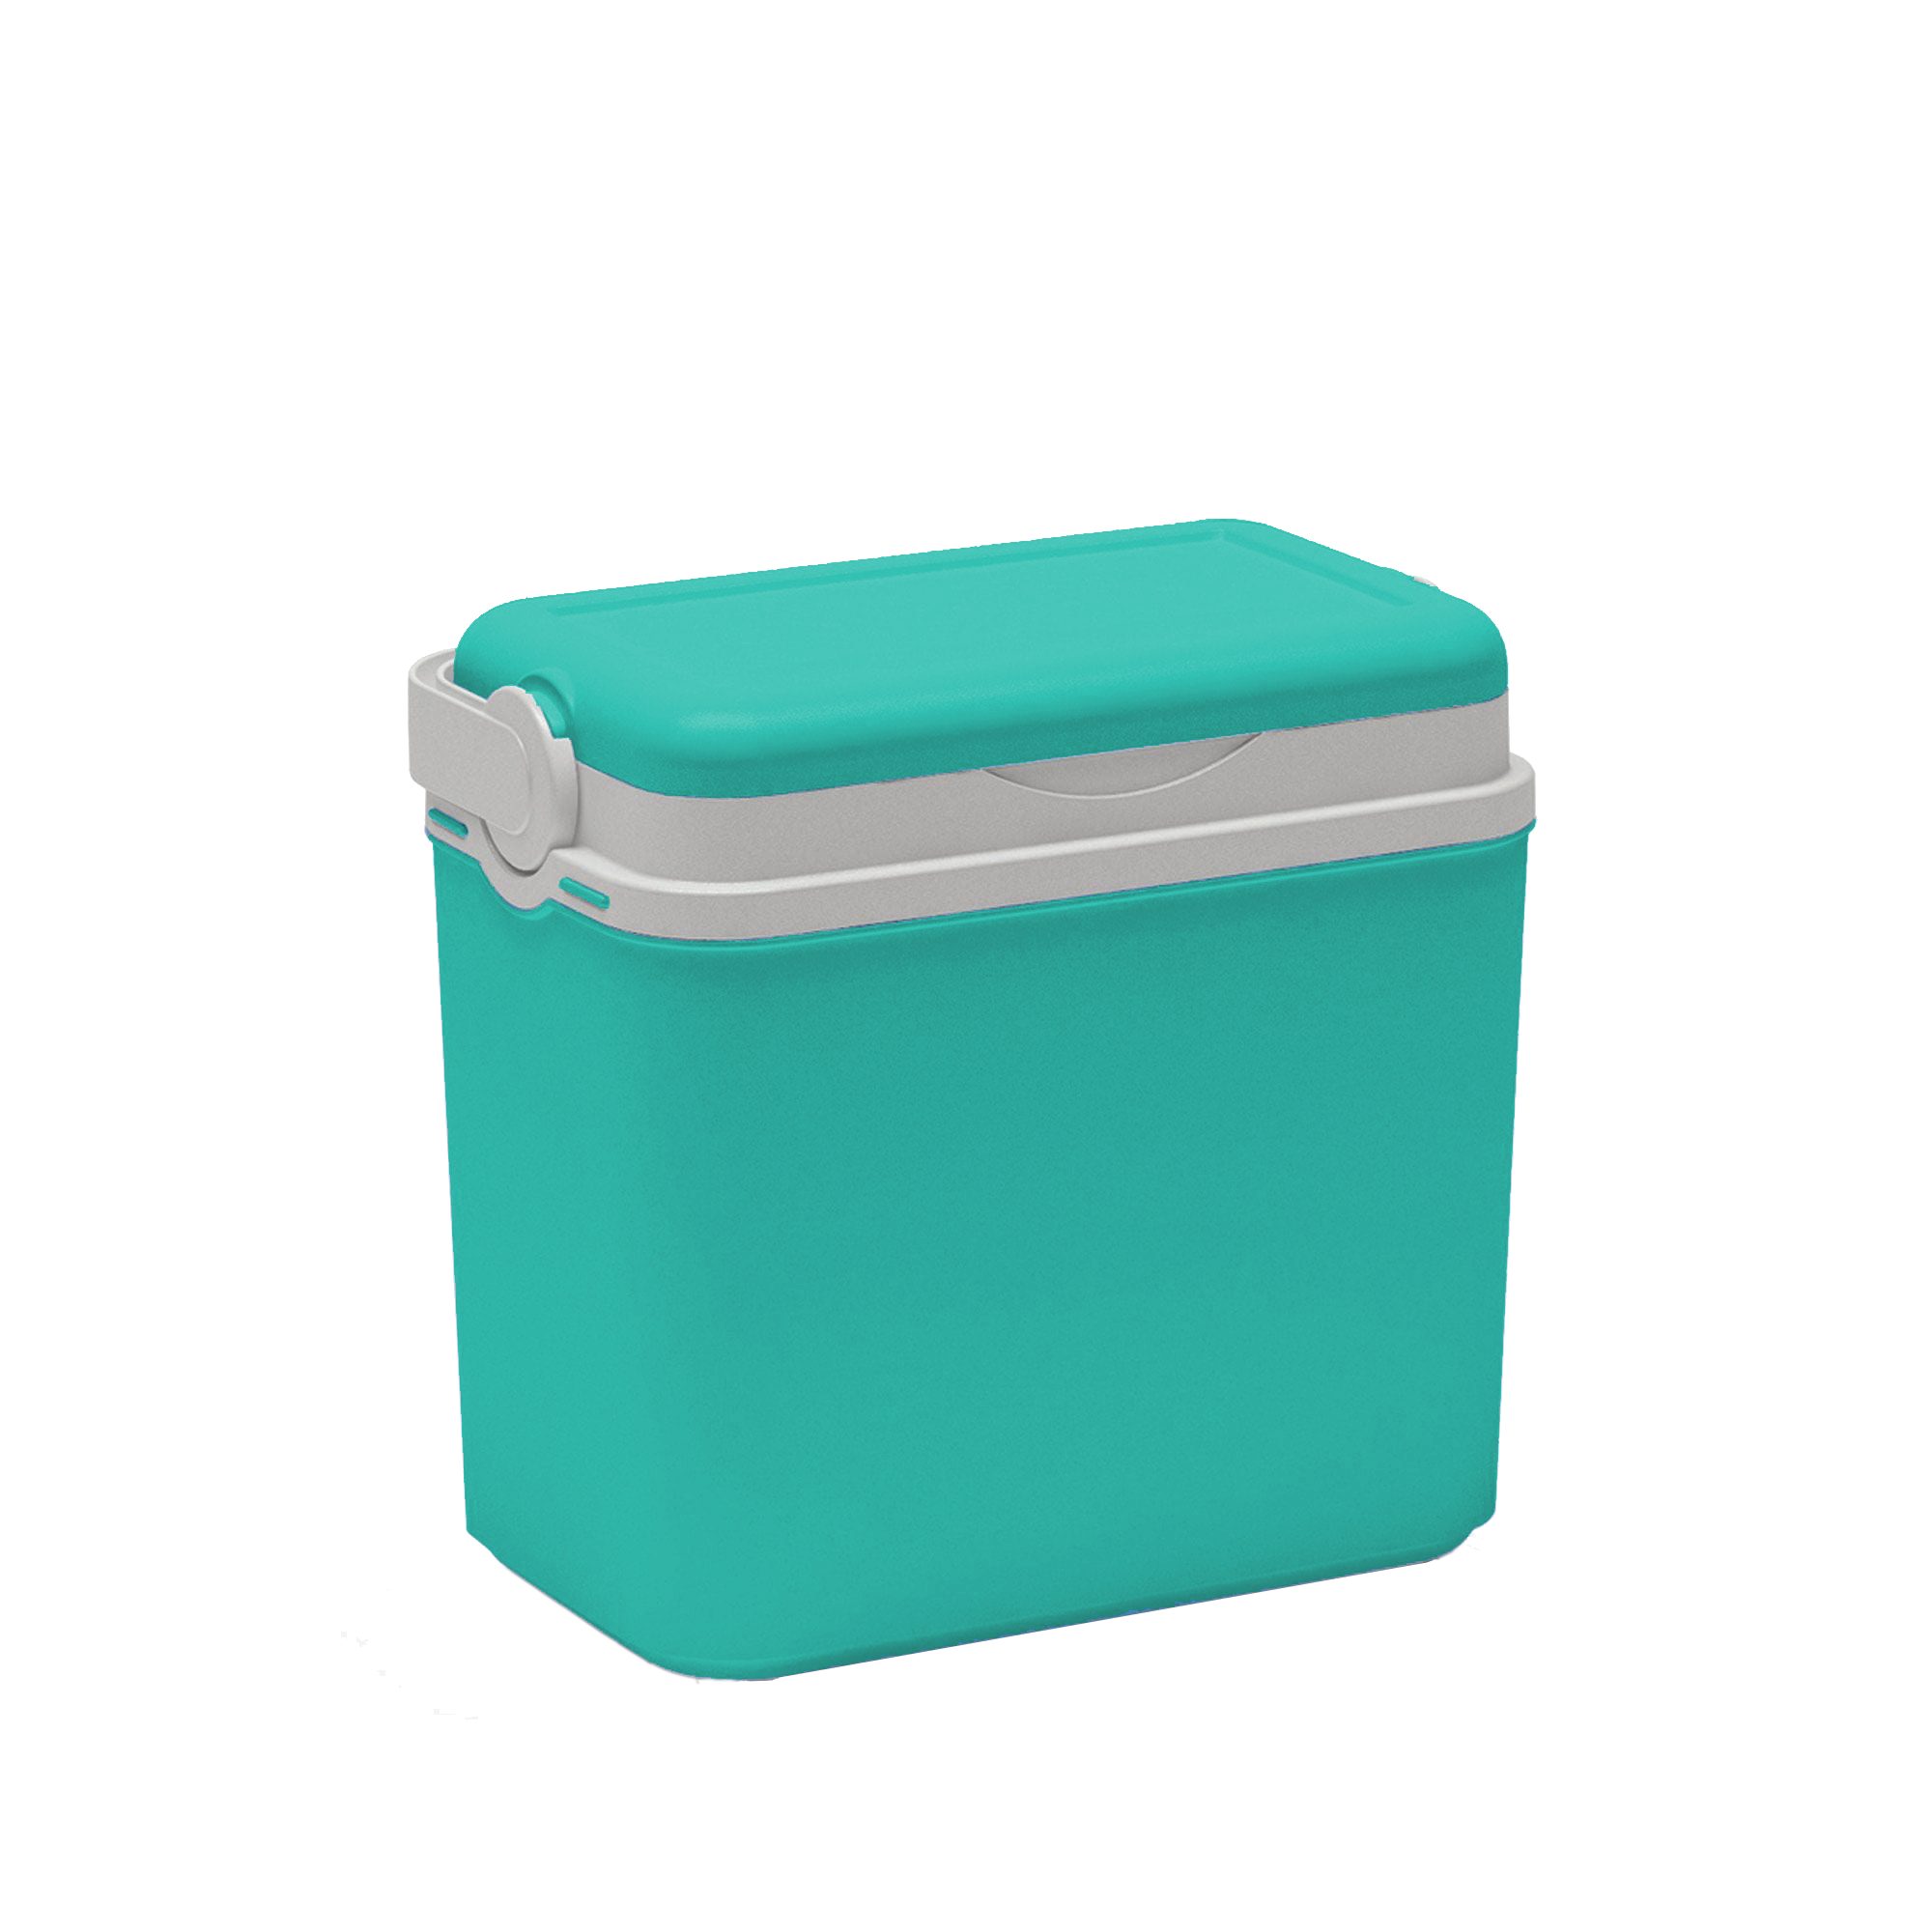 Kühlbox 10 in Kreher Farben verschiedenen Liter (Farbe wählbar) Frischhaltedose Türkis